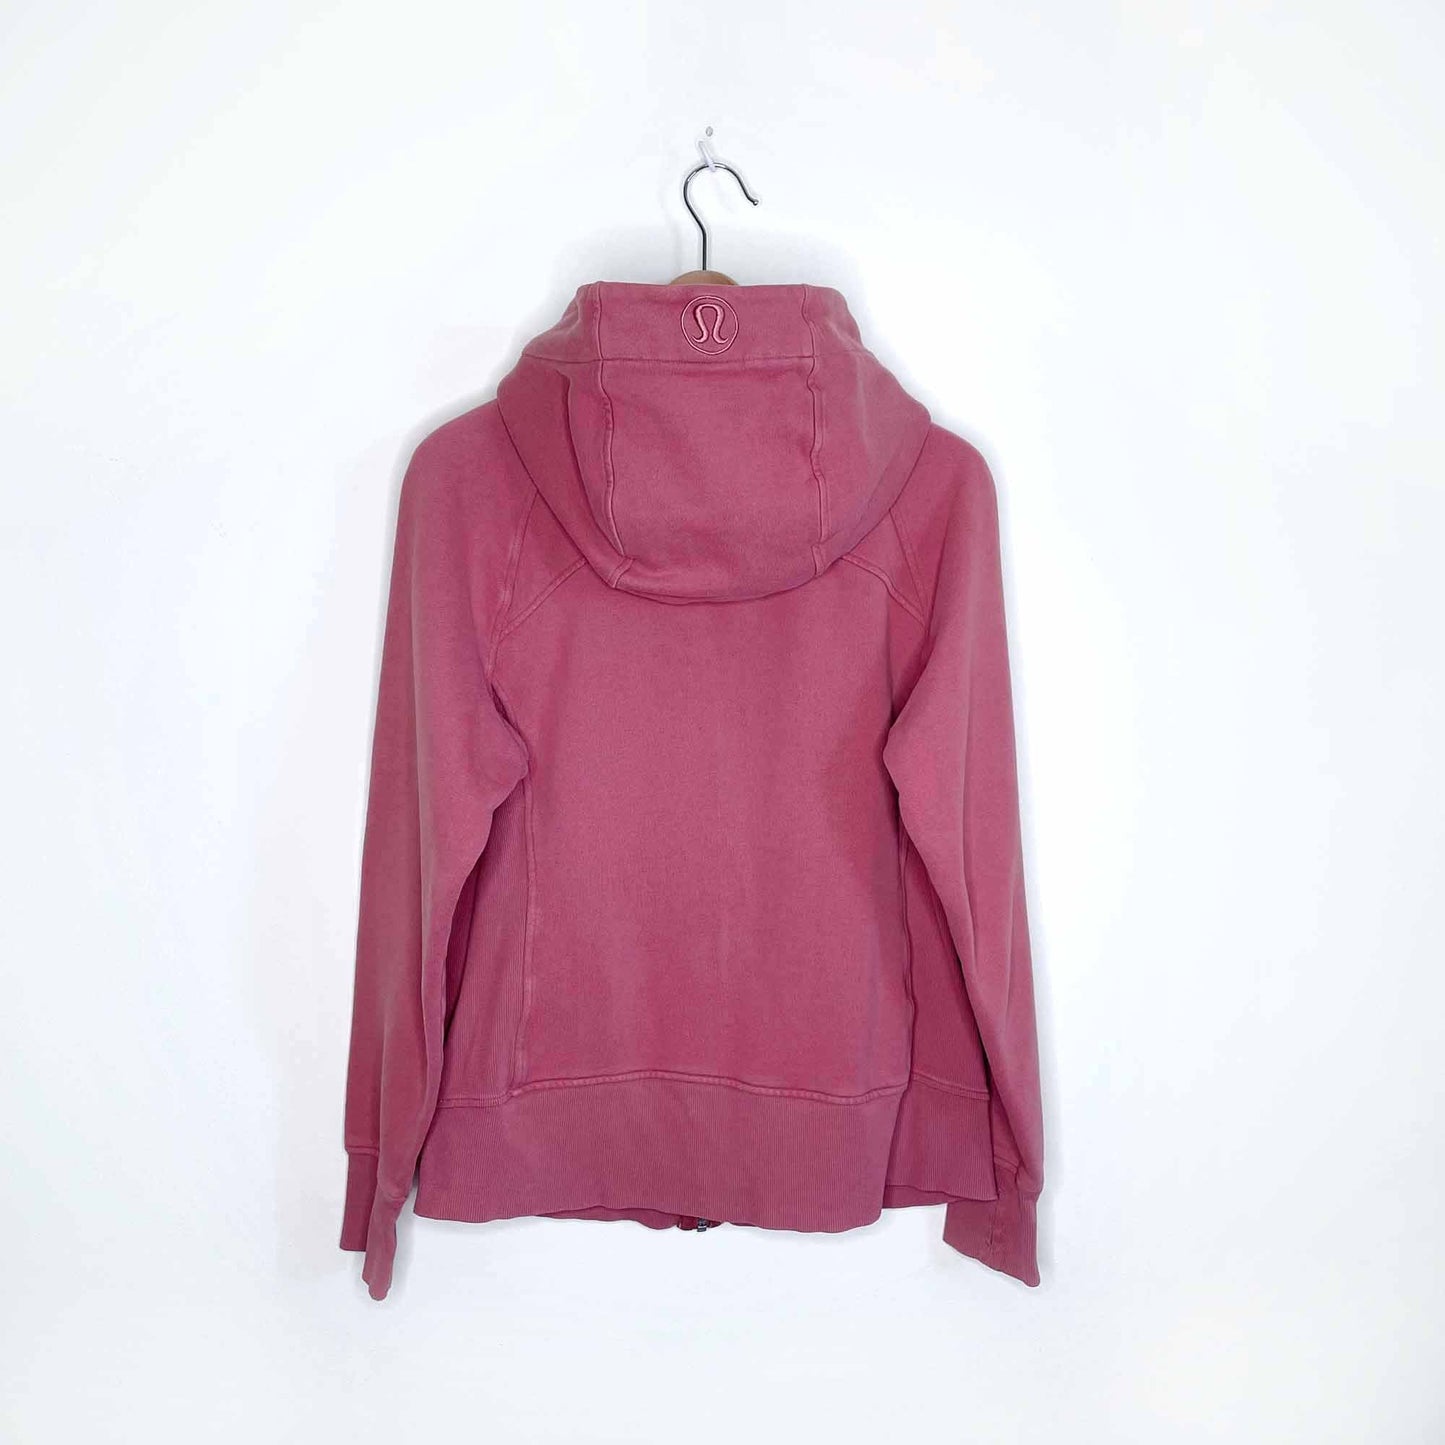 lululemon 2020 light fleece scuba hoodie in pink - size 8